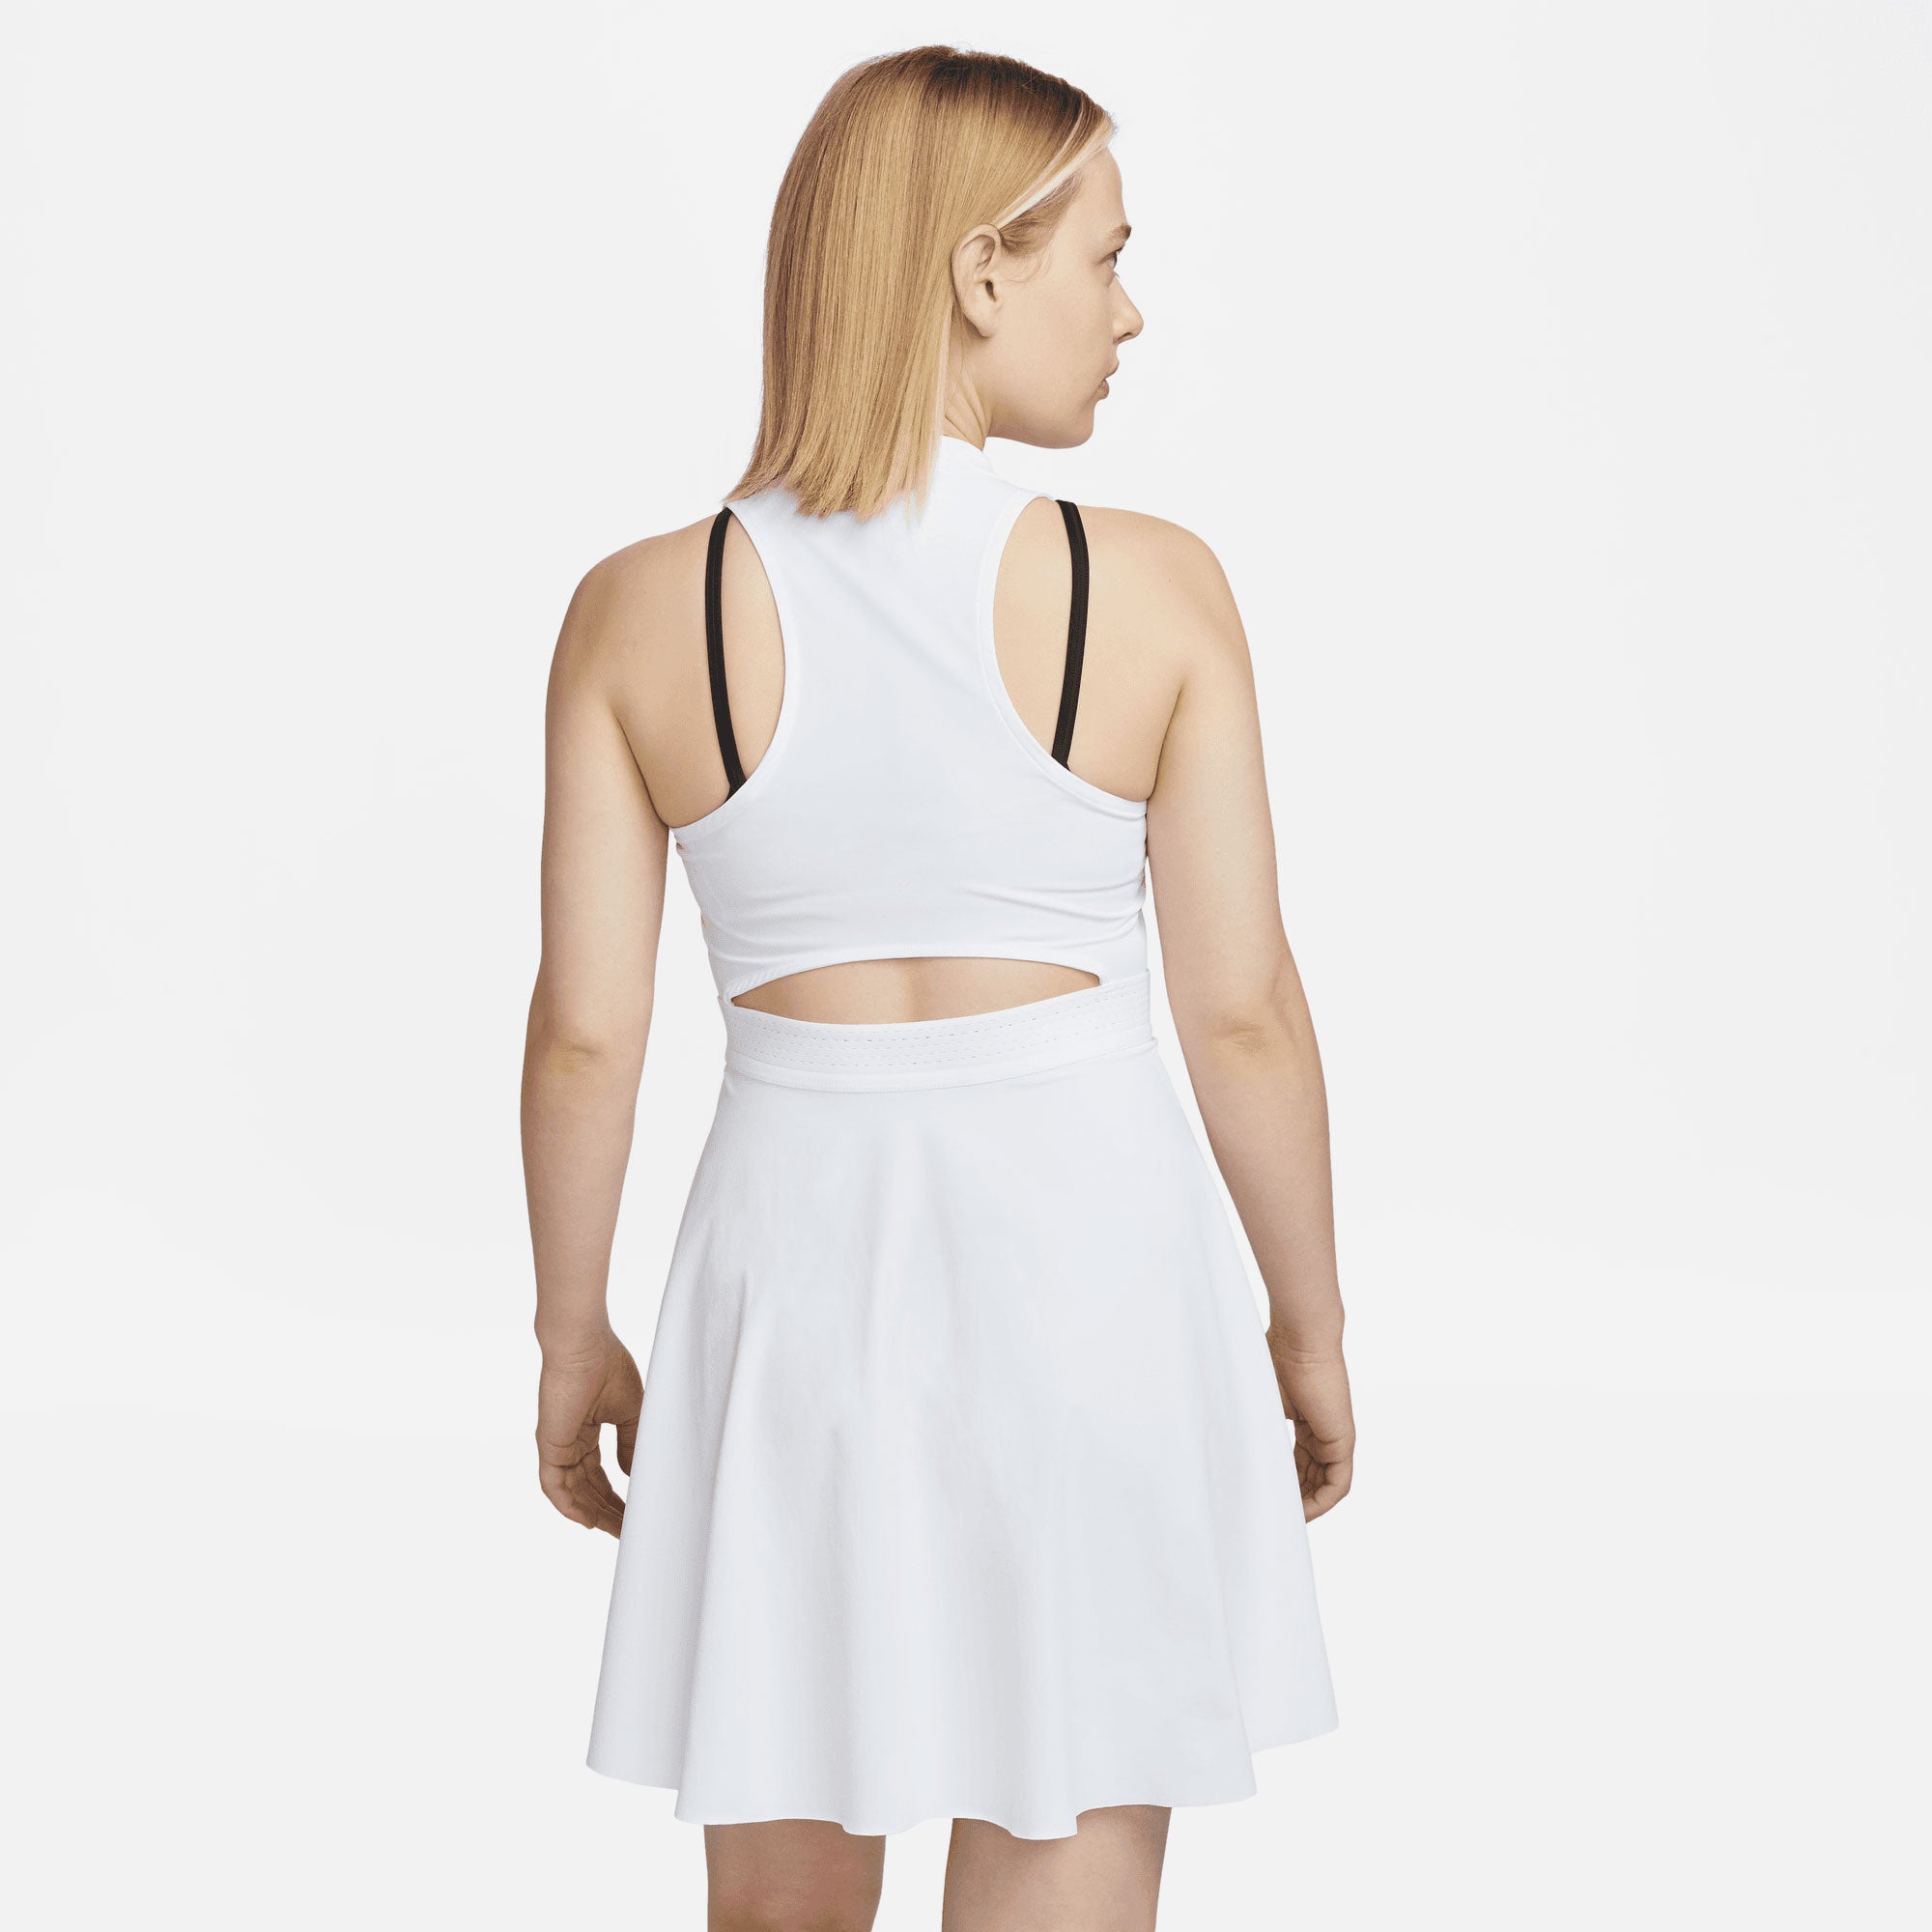 NikeCourt  Dri-FIT Advantage Women's Tennis Dress White (2)